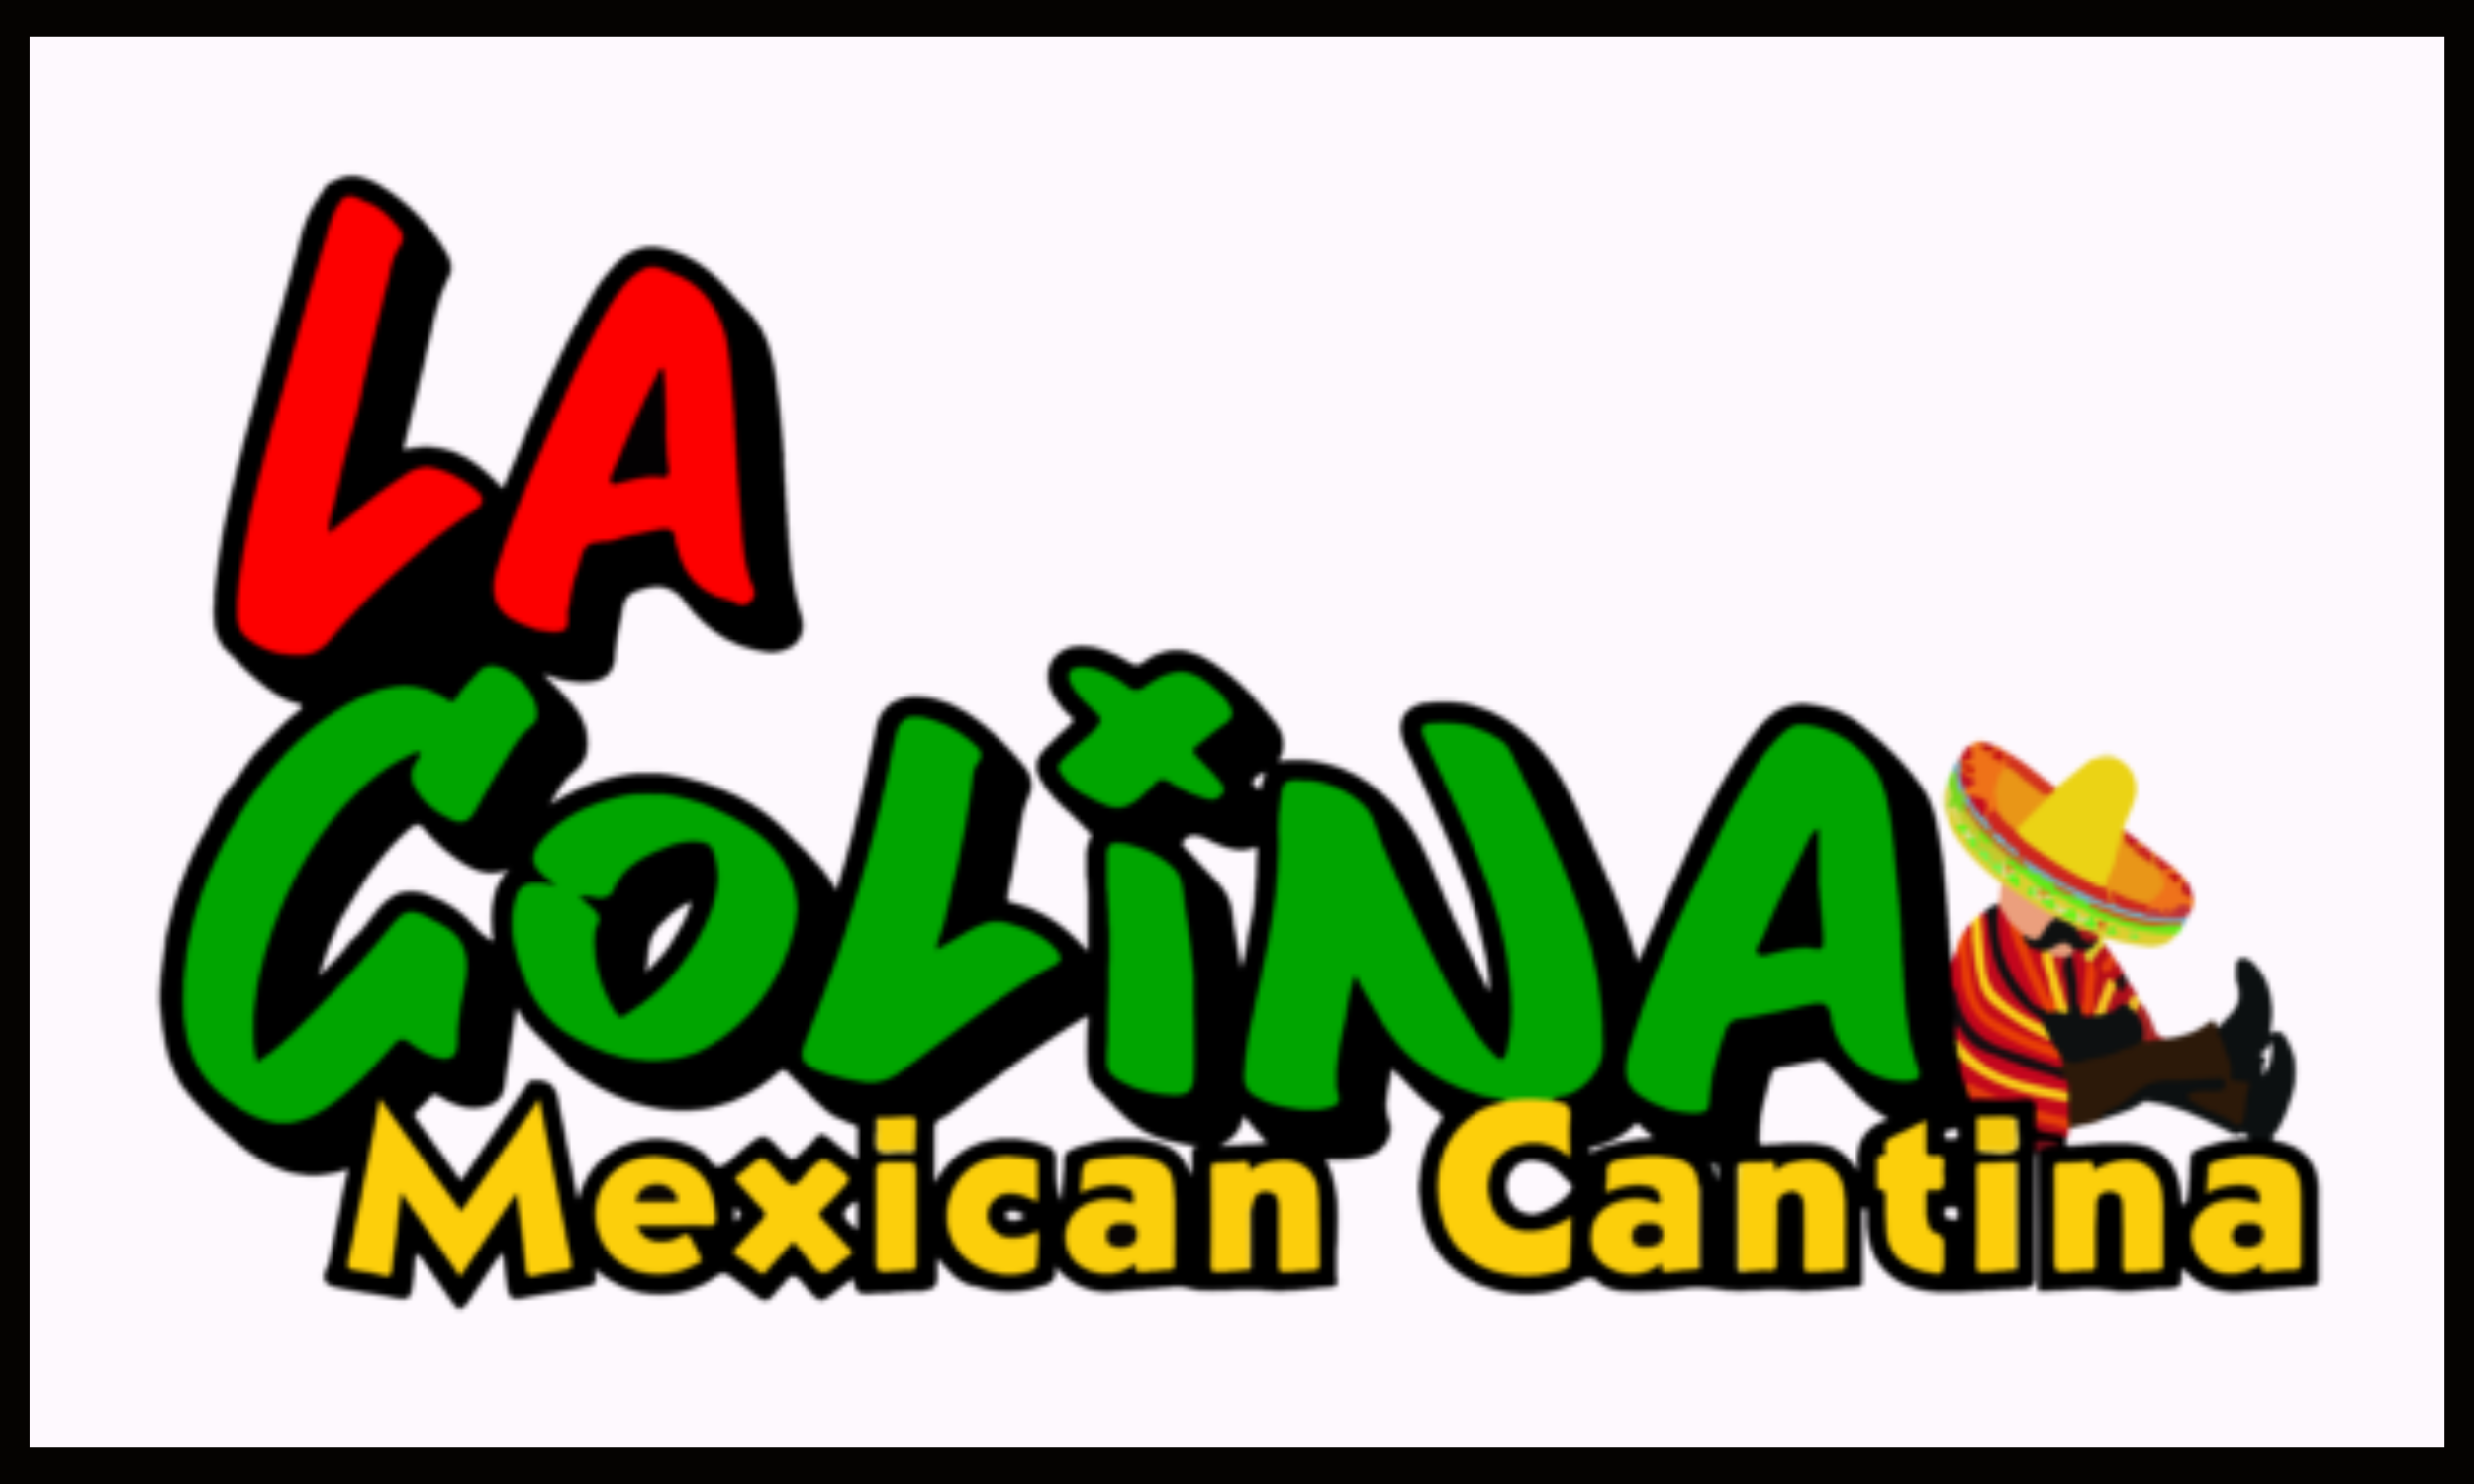 La Colina Mexican Cantina